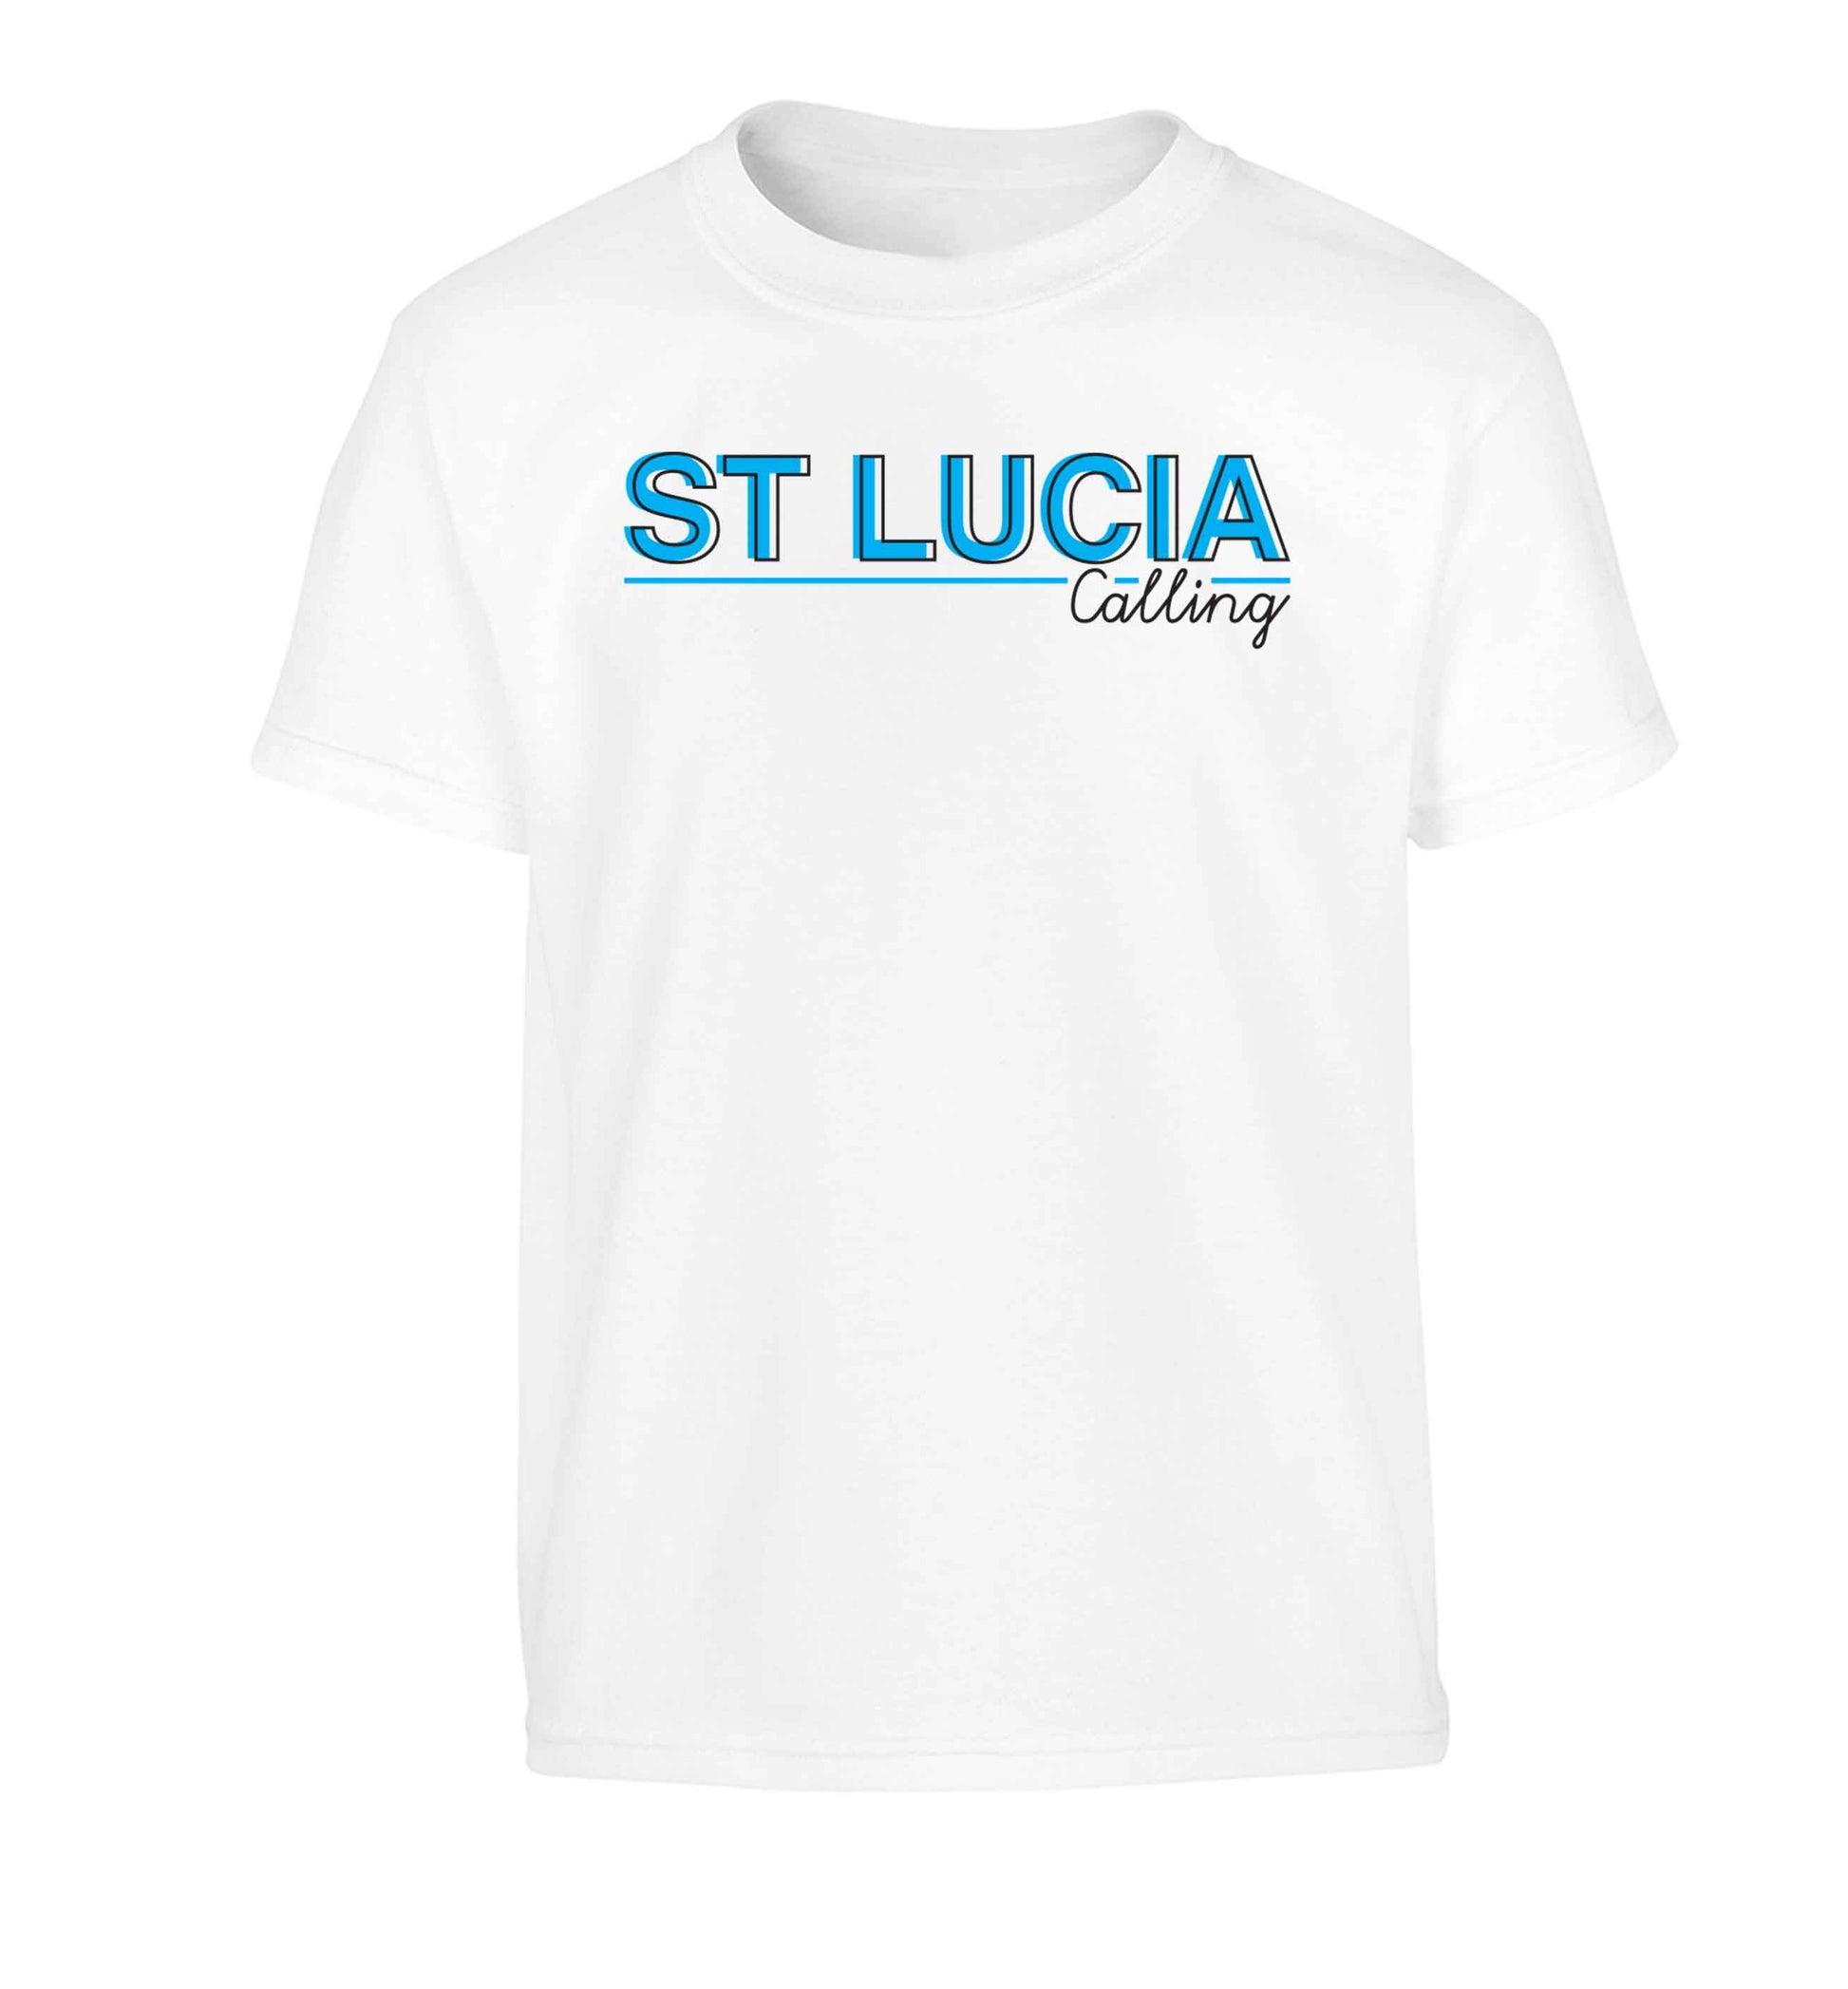 St Lucia calling Children's white Tshirt 12-13 Years